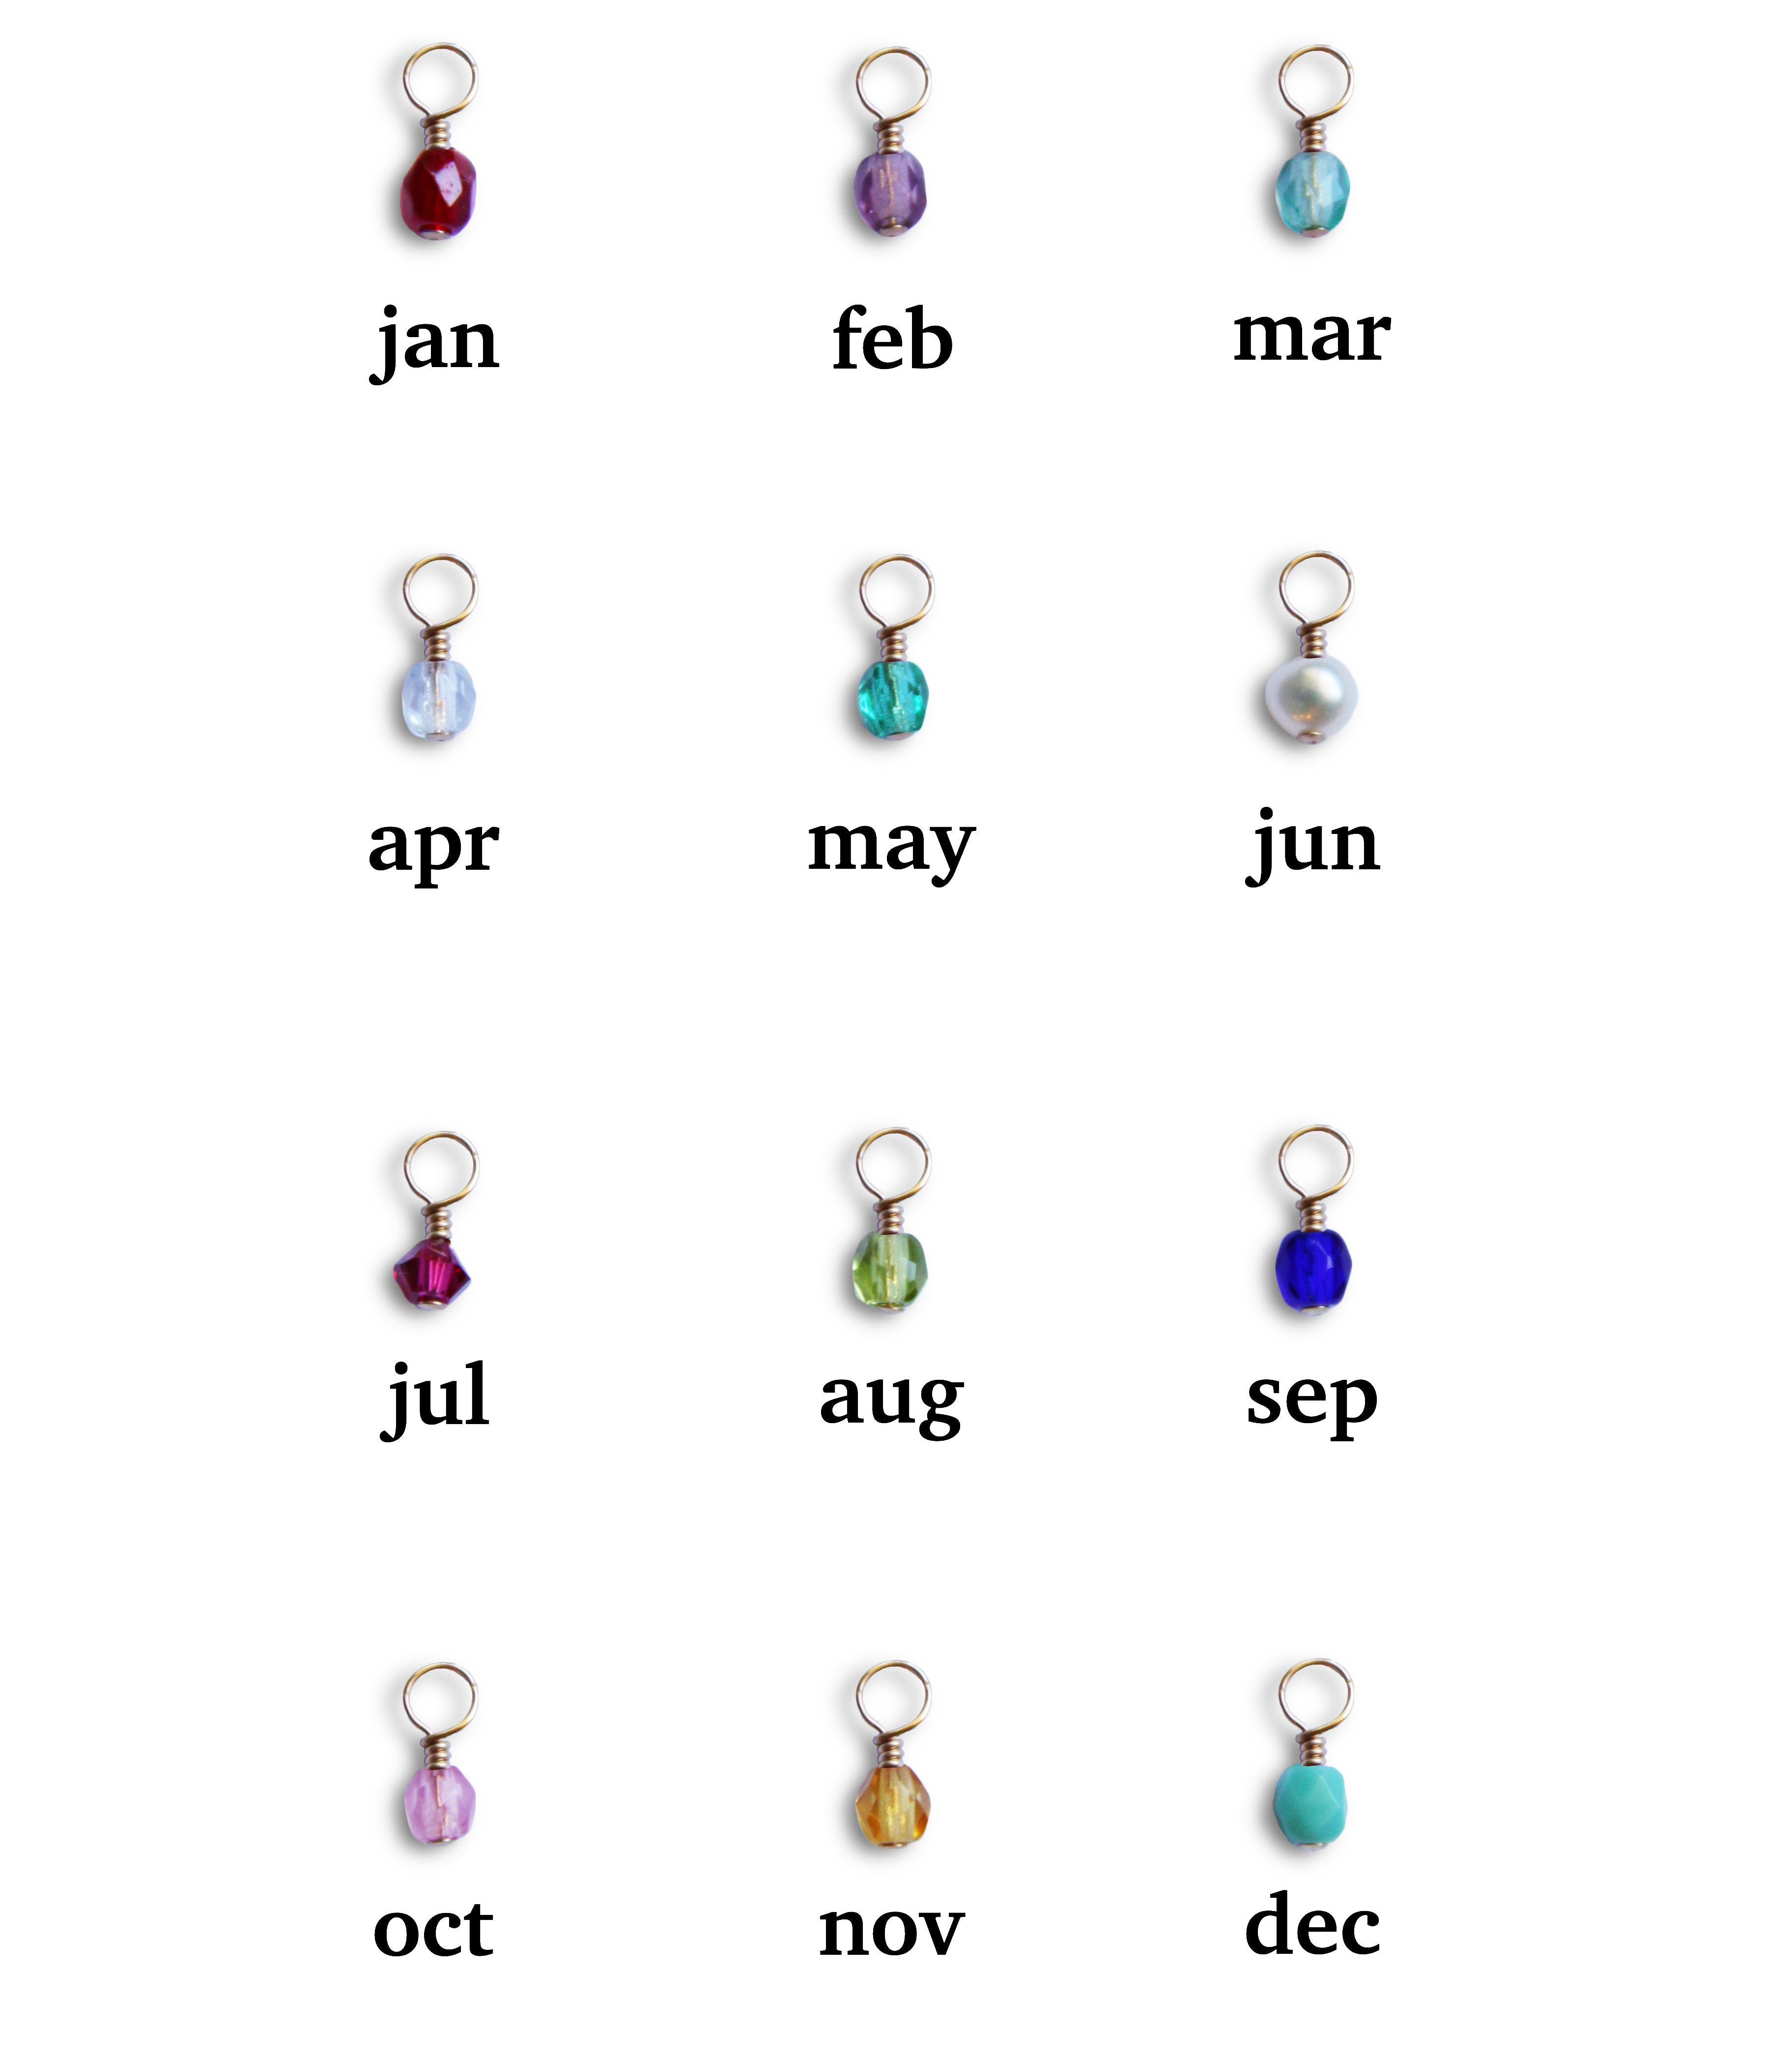 Zodiac Sign Bracelets – Sutra Wear